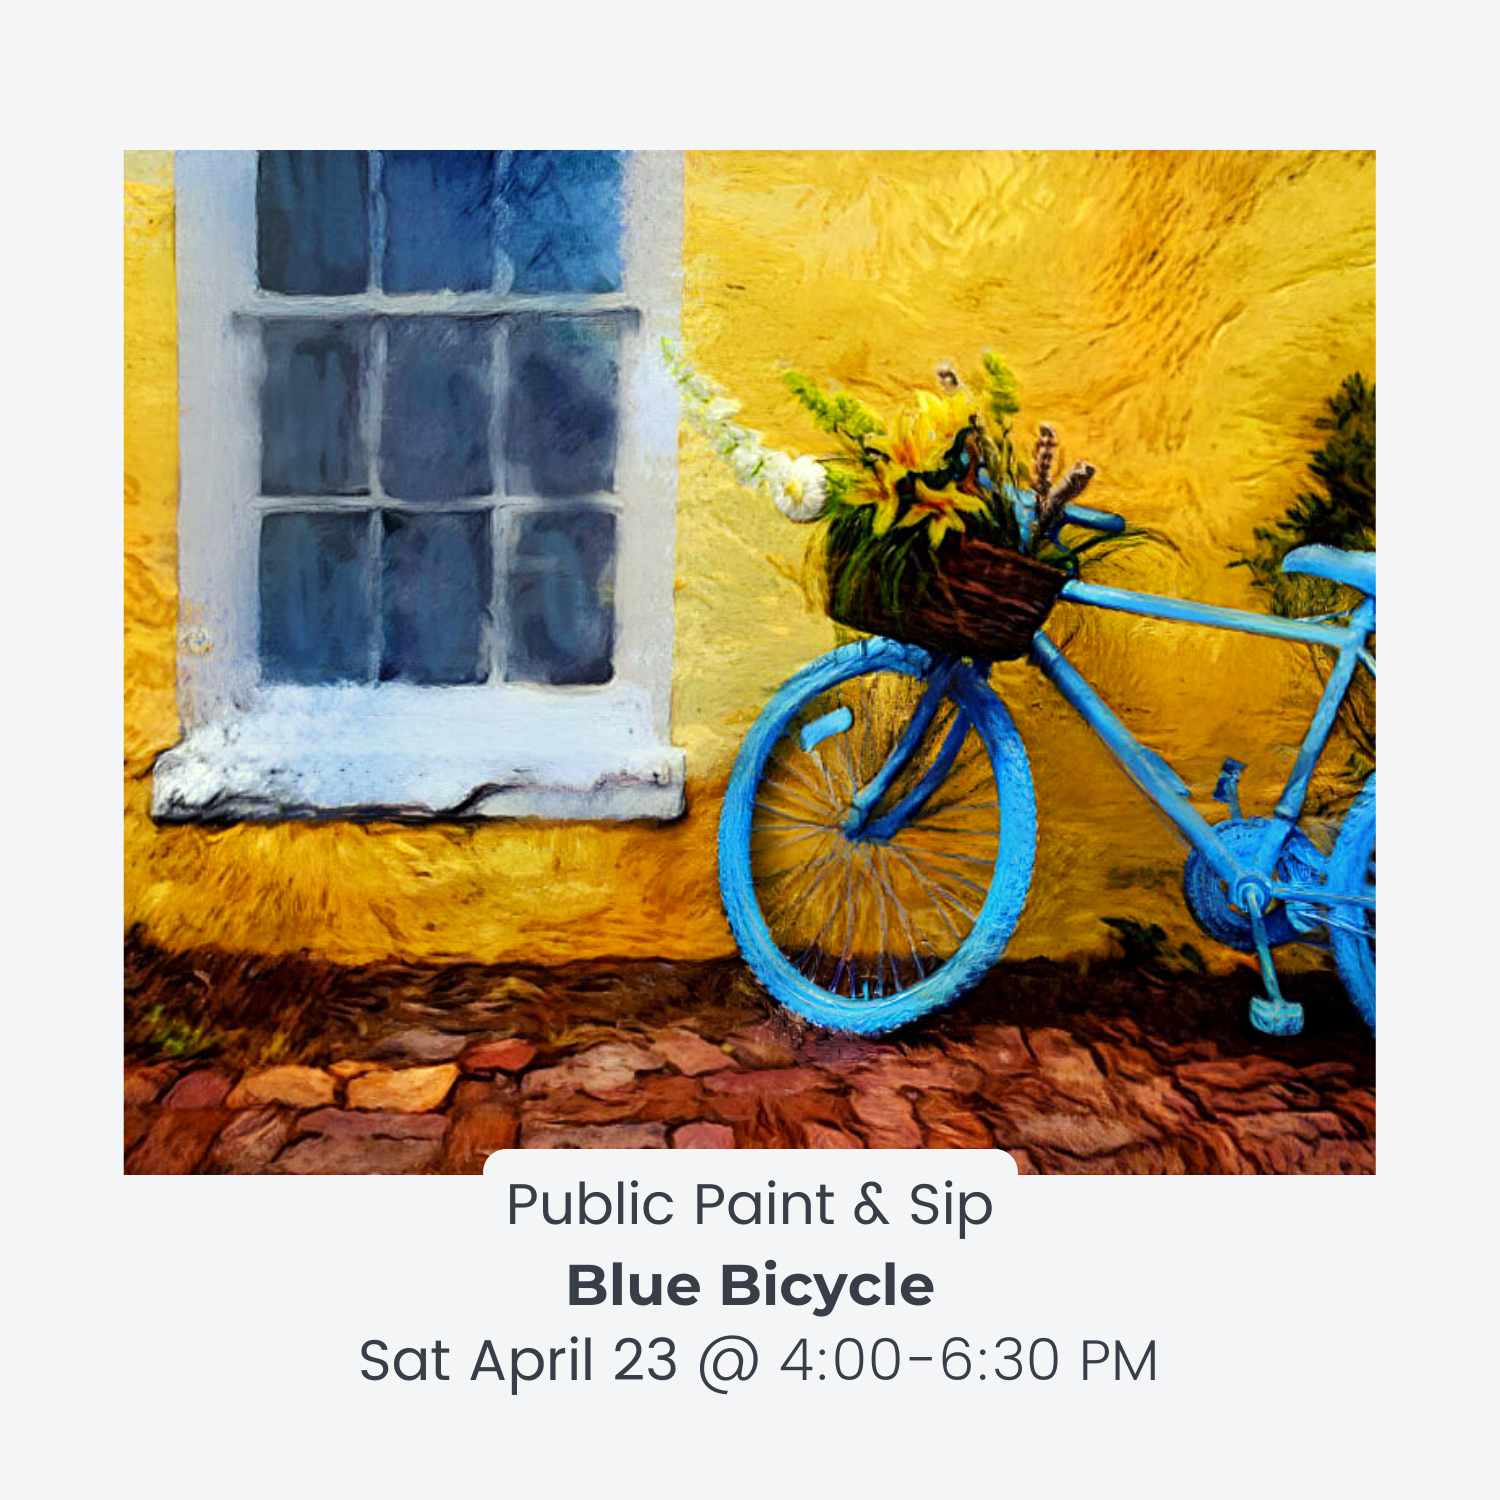 "Blue Bicycle" Sat April 23 @ 4:00-6:30 PM